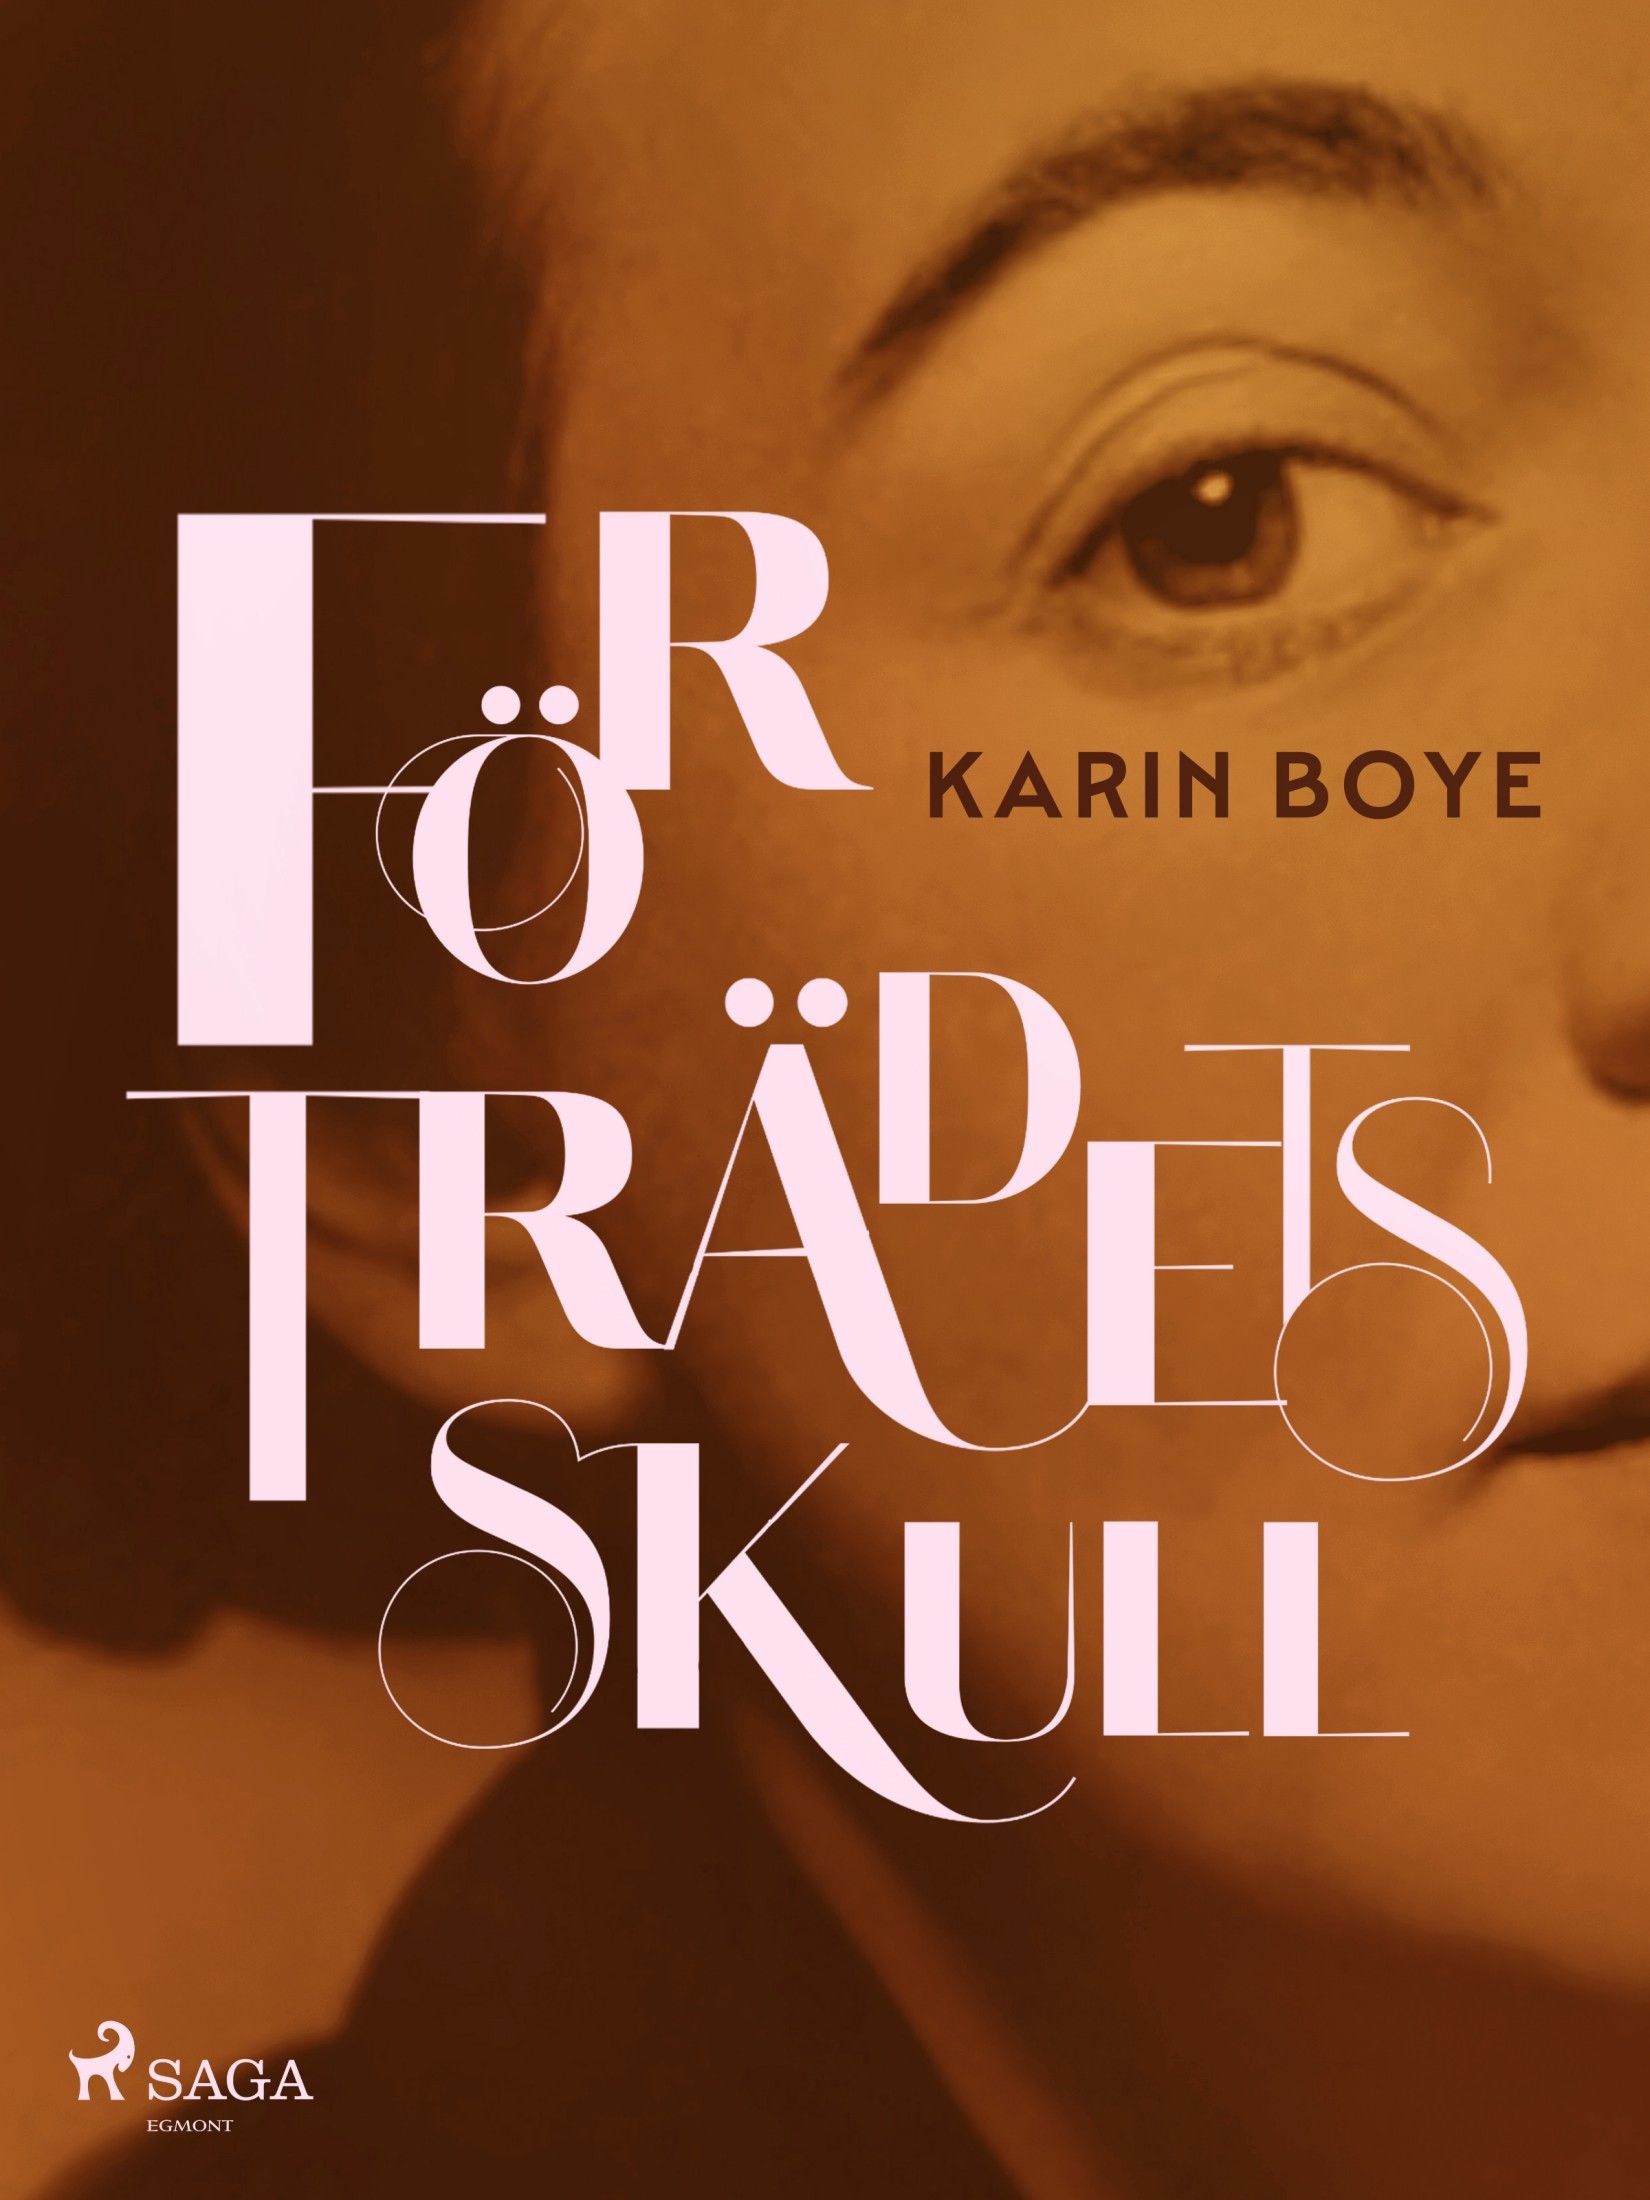 För Trädets Skull, e-bok av Karin Boye